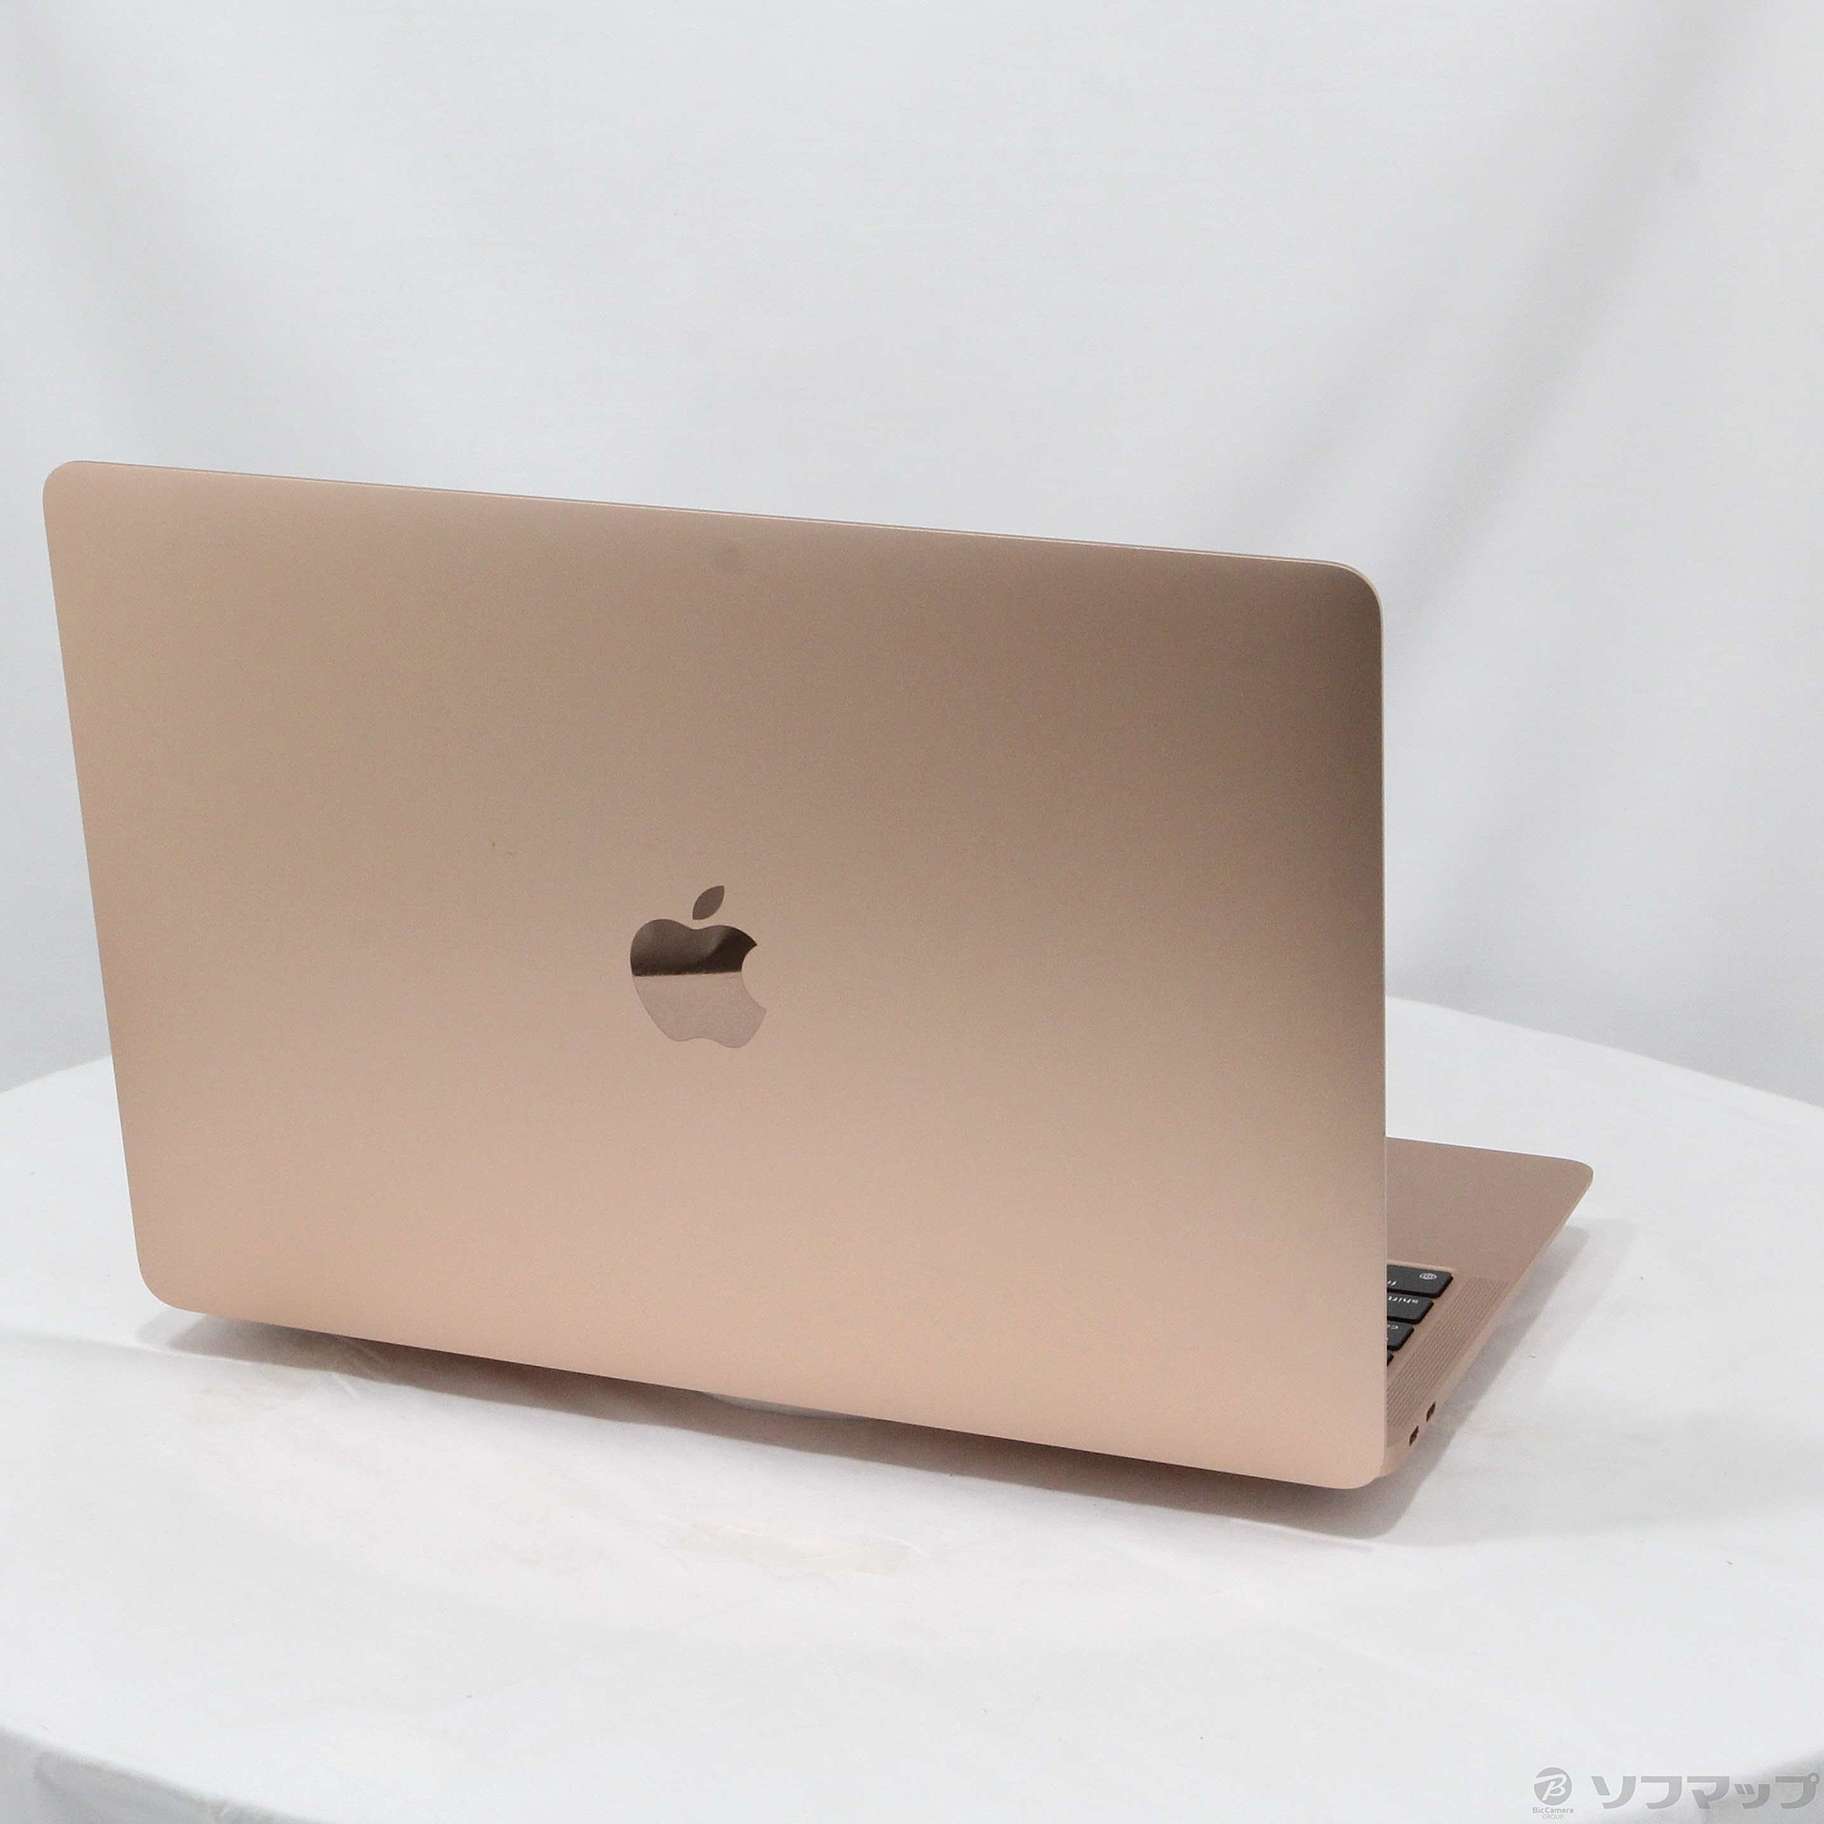 シップスm1 macbook air メモリ8G SSD256 バッテリー最大容量96% MacBook本体